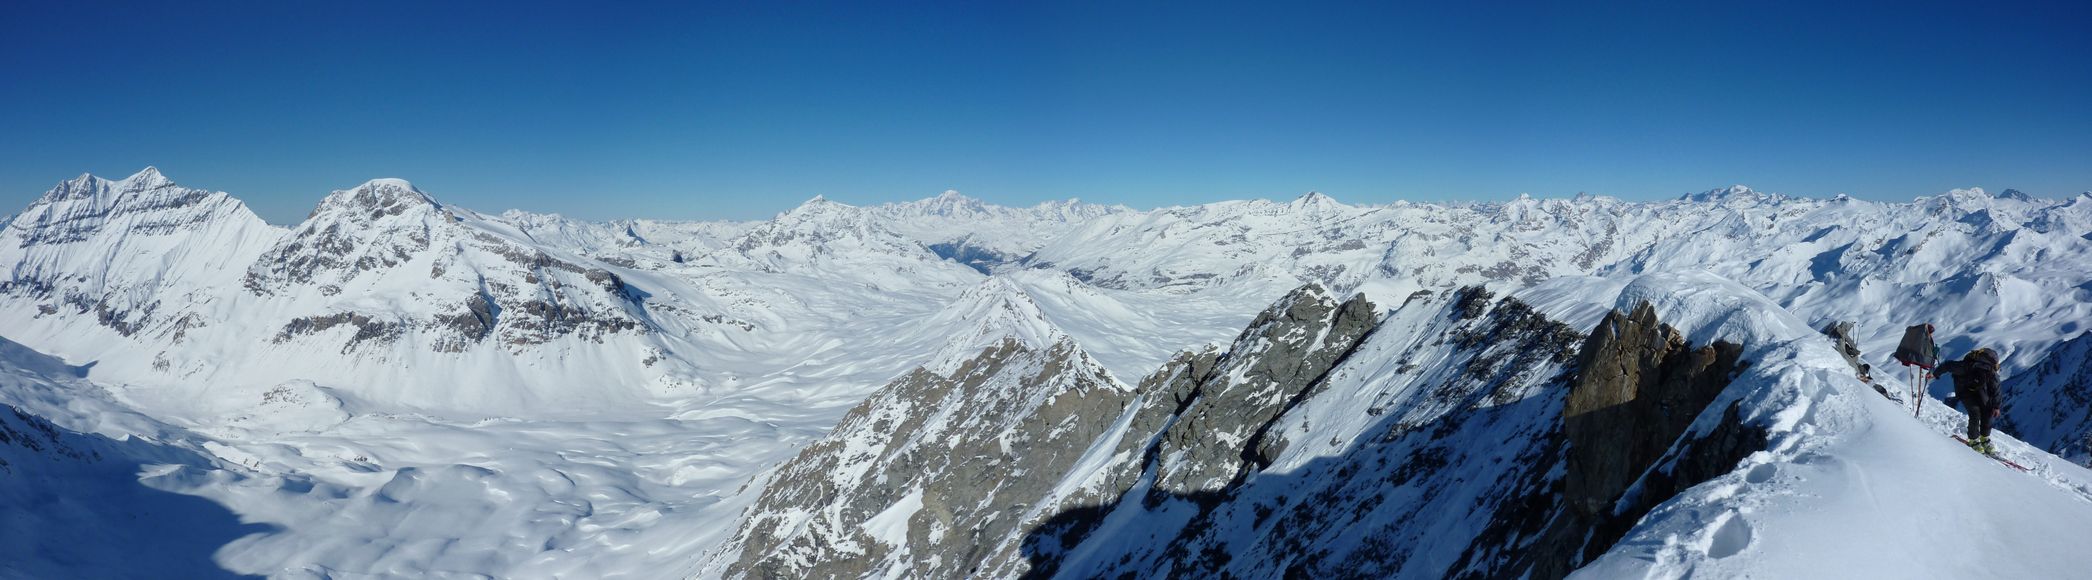 Pte de la Sana - vue Nord : De la Grande Casse au Grand Paradis en passant par le Mt Blanc et le Cervin